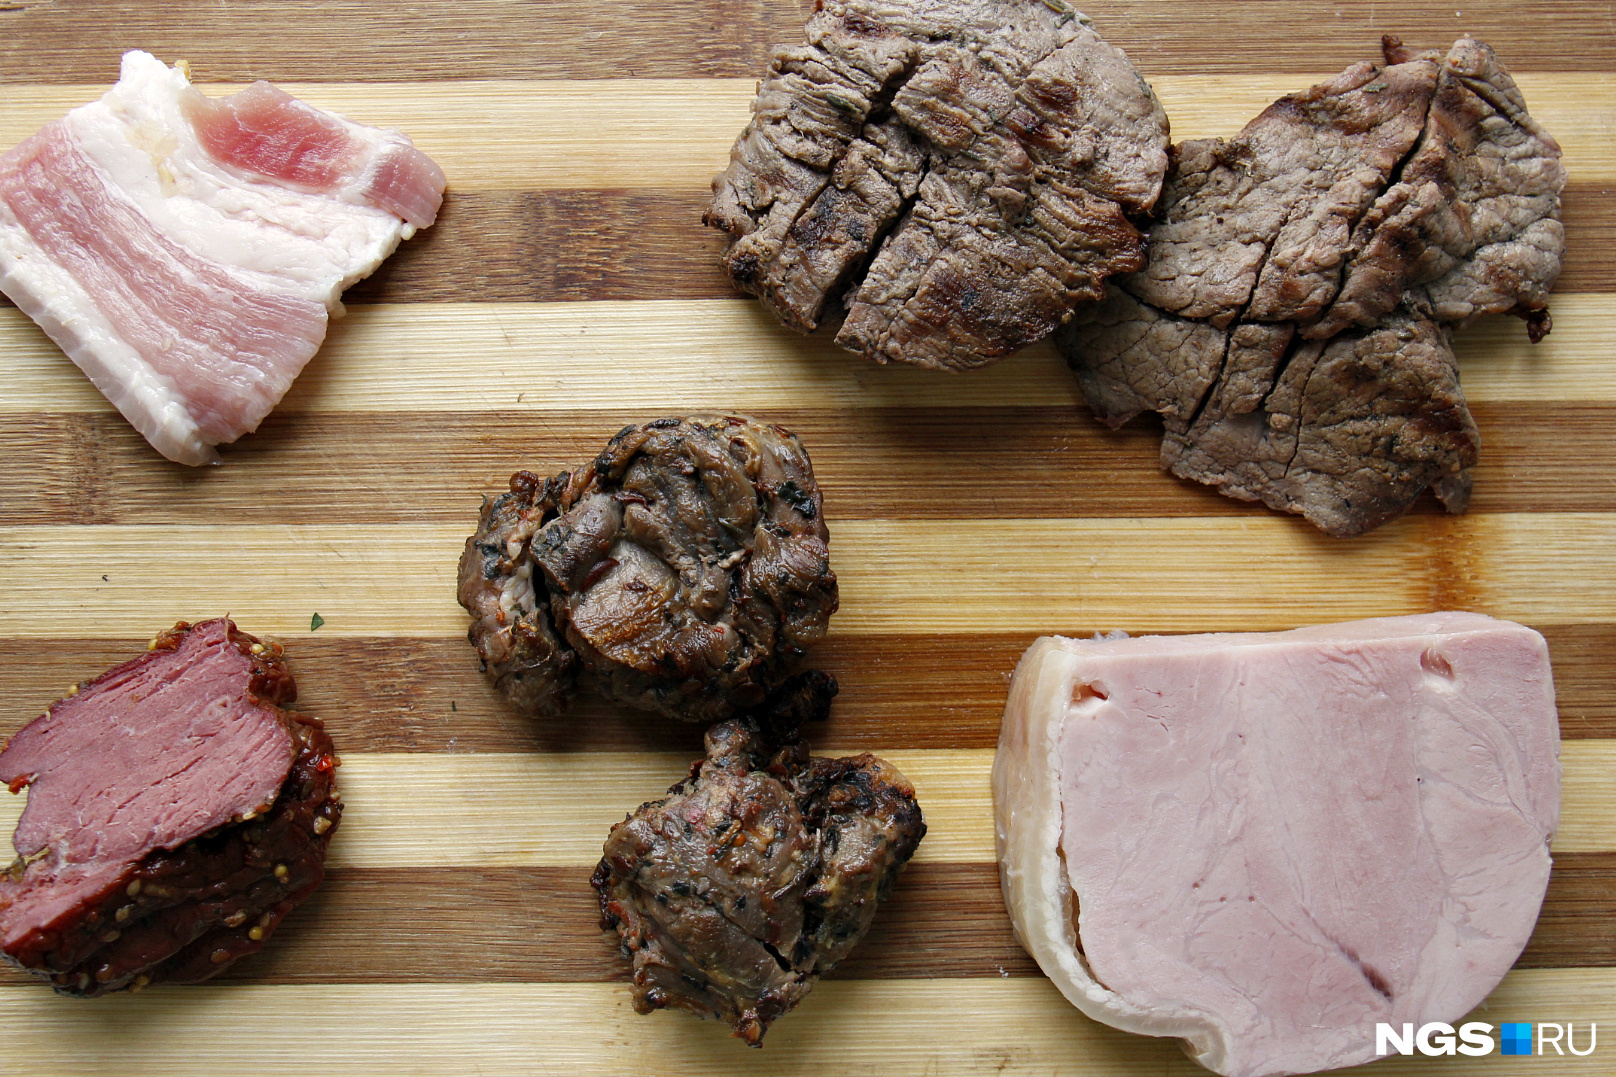 Семь видов мяса пришлось сократить до пяти — из-за скудного выбора в рознице